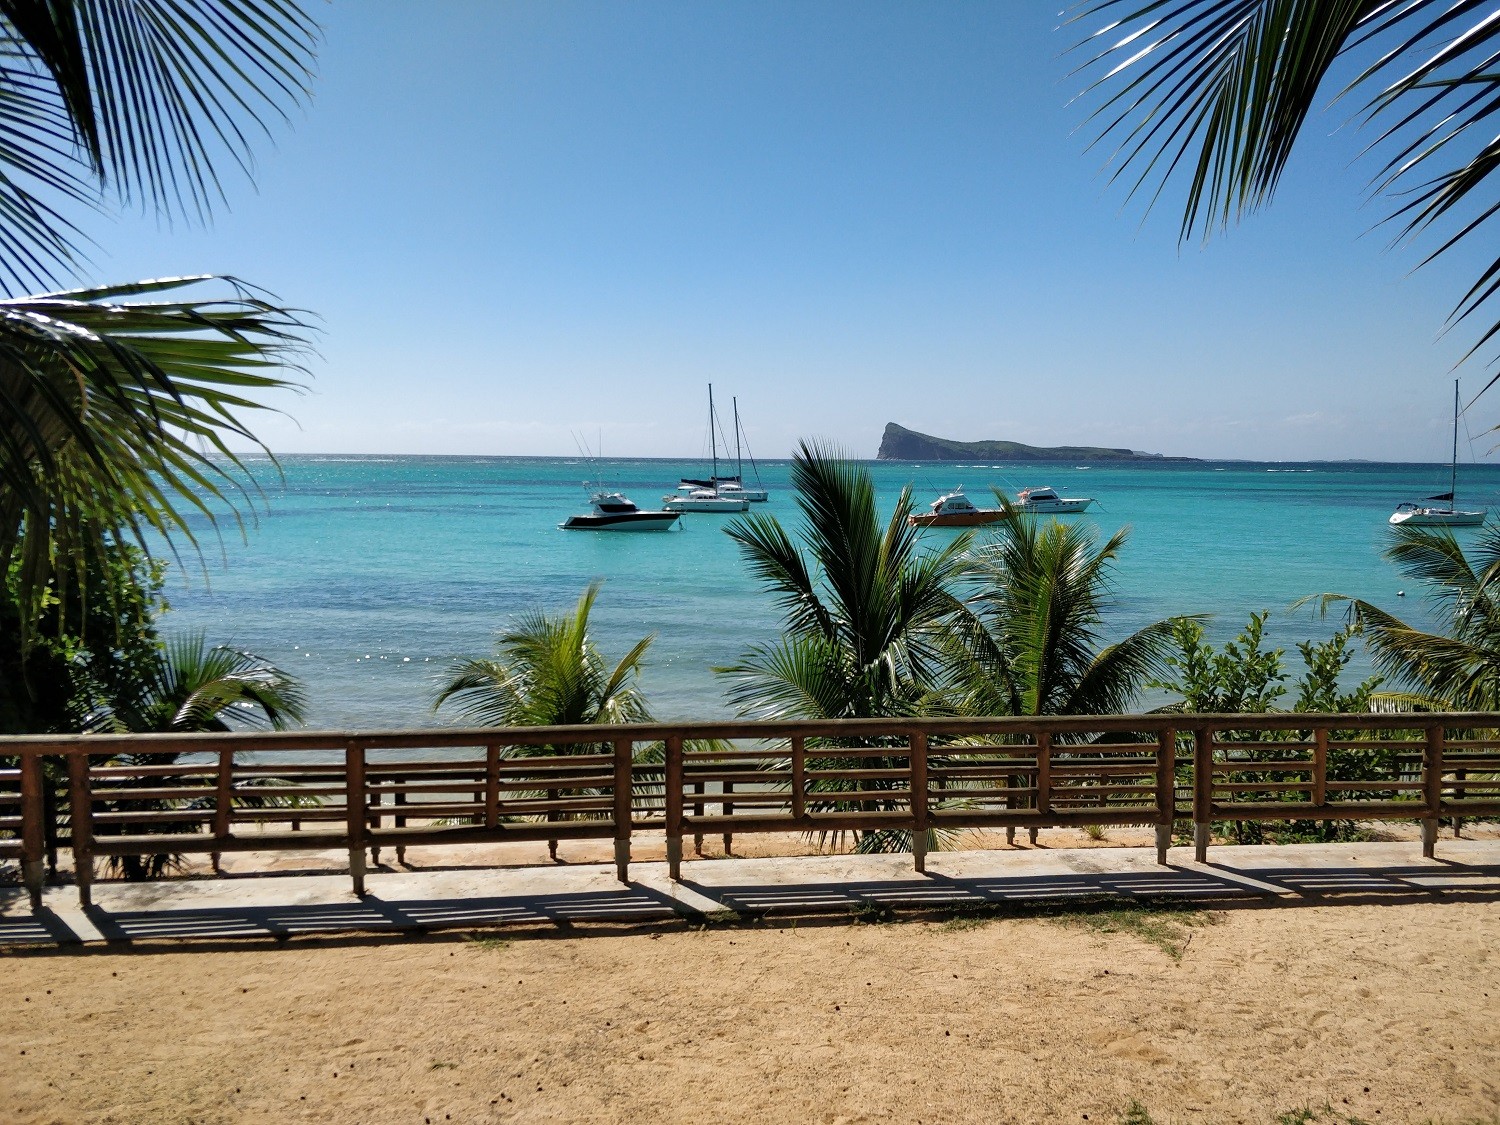 Bain boeuf public beach cap malheureux mauritius